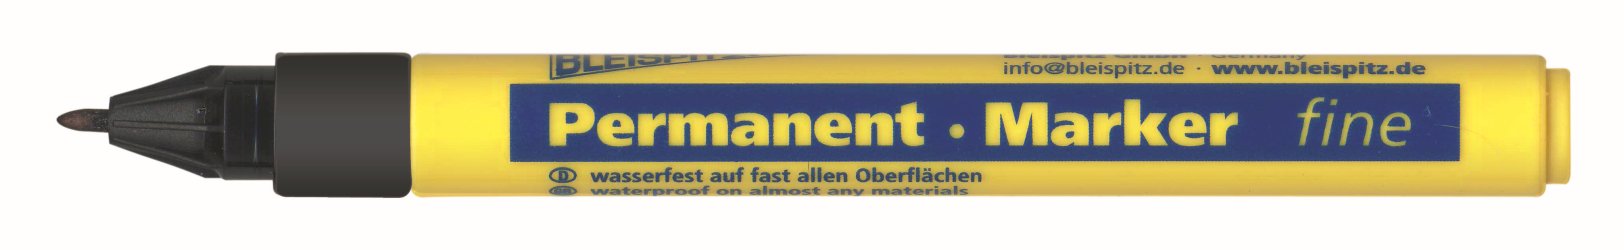 Bleispitz Permament-Marker fine 1 mm schwarz